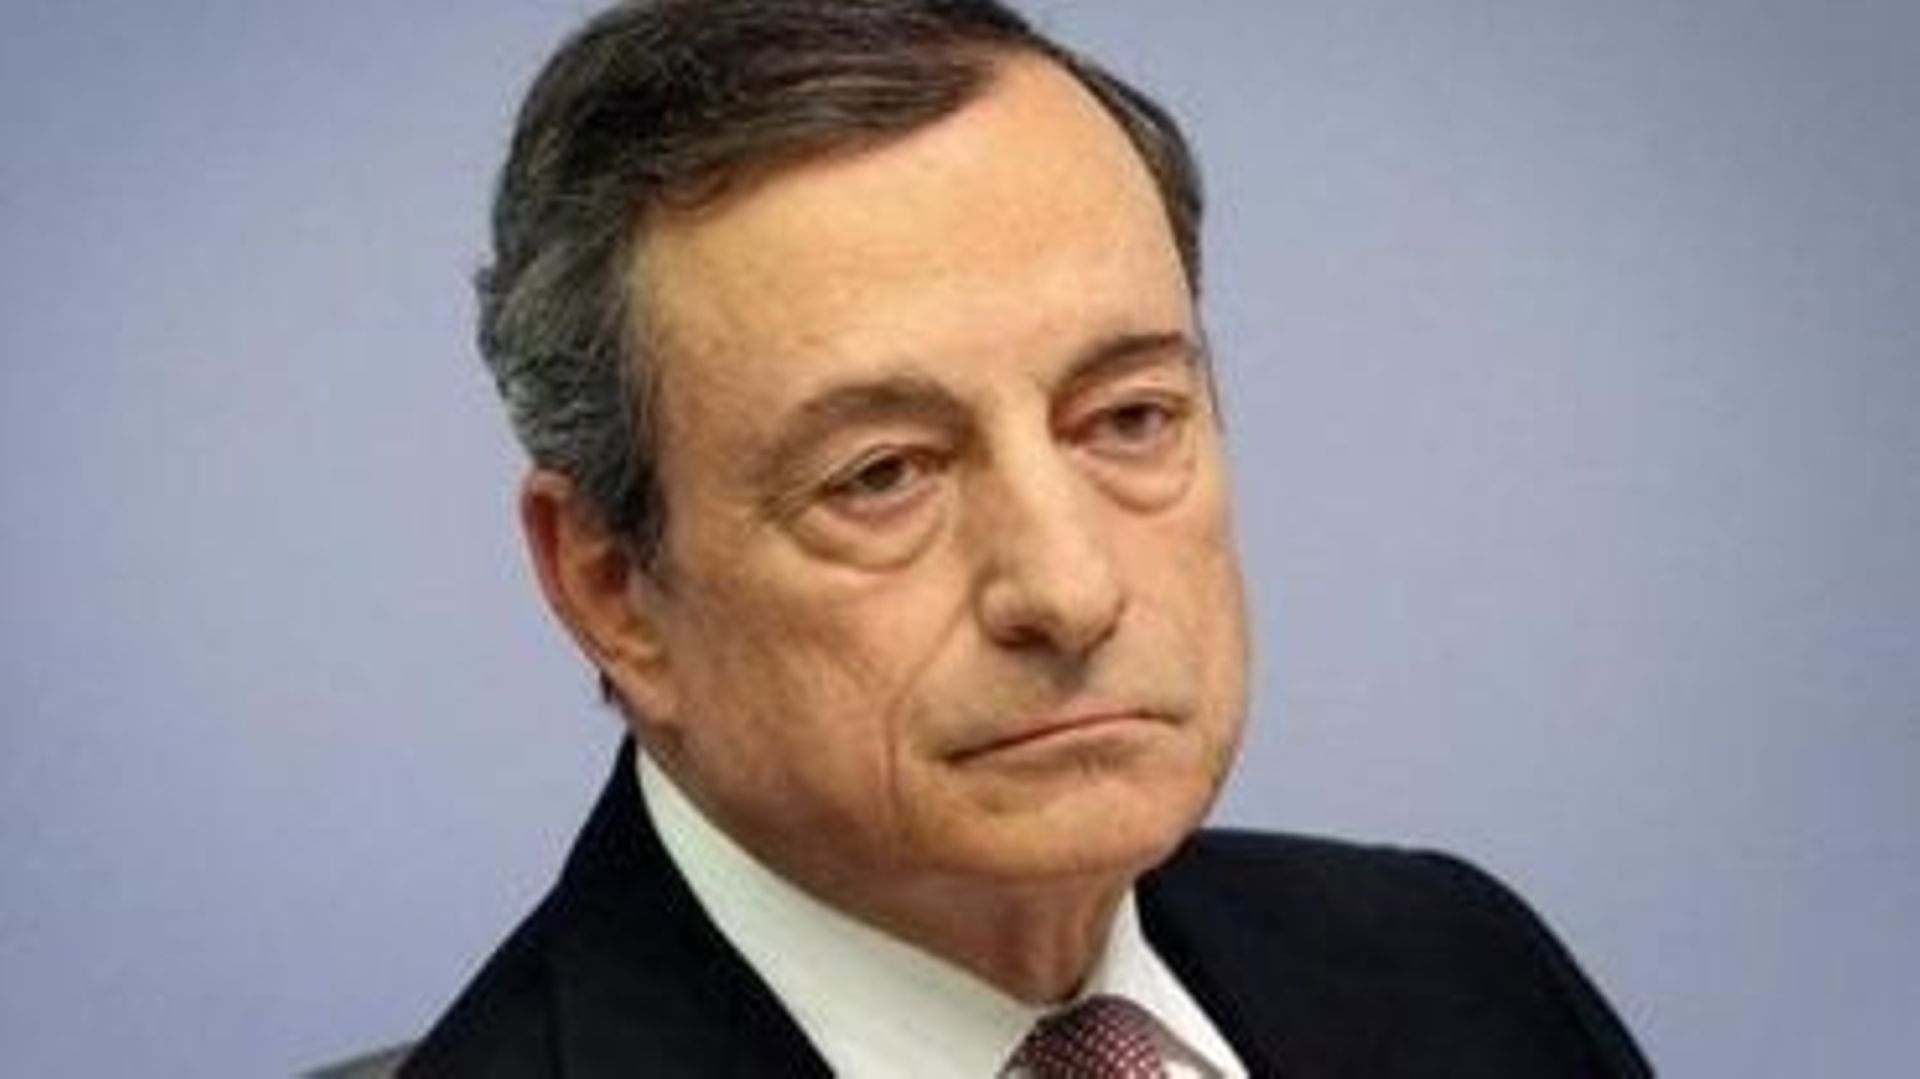 Mario Draghi, chargé de former un gouvernement en Italie